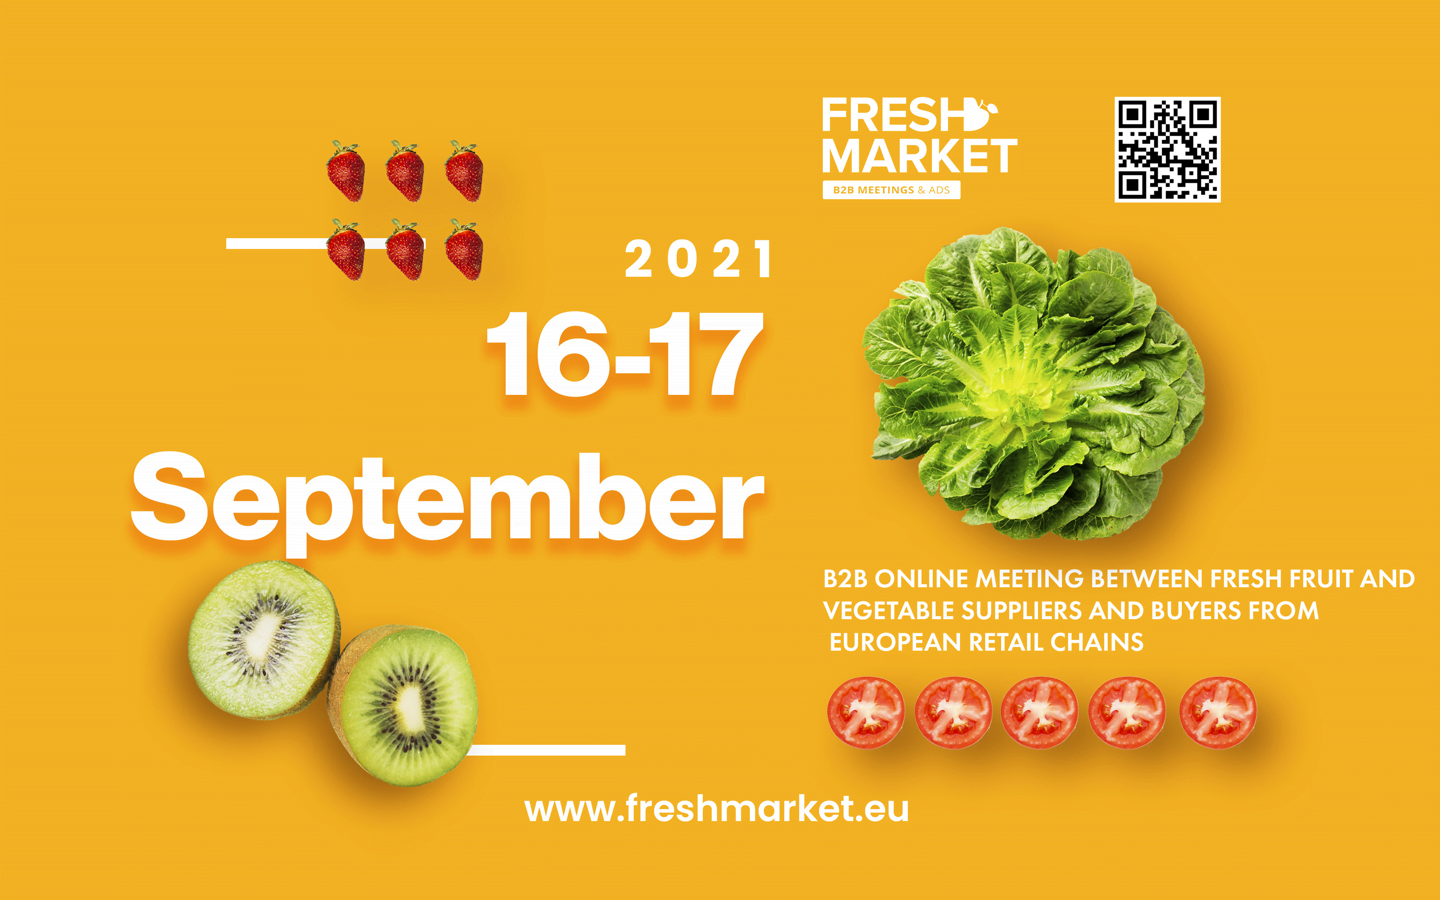 Fresh Market 2021 September 16-17 meetings